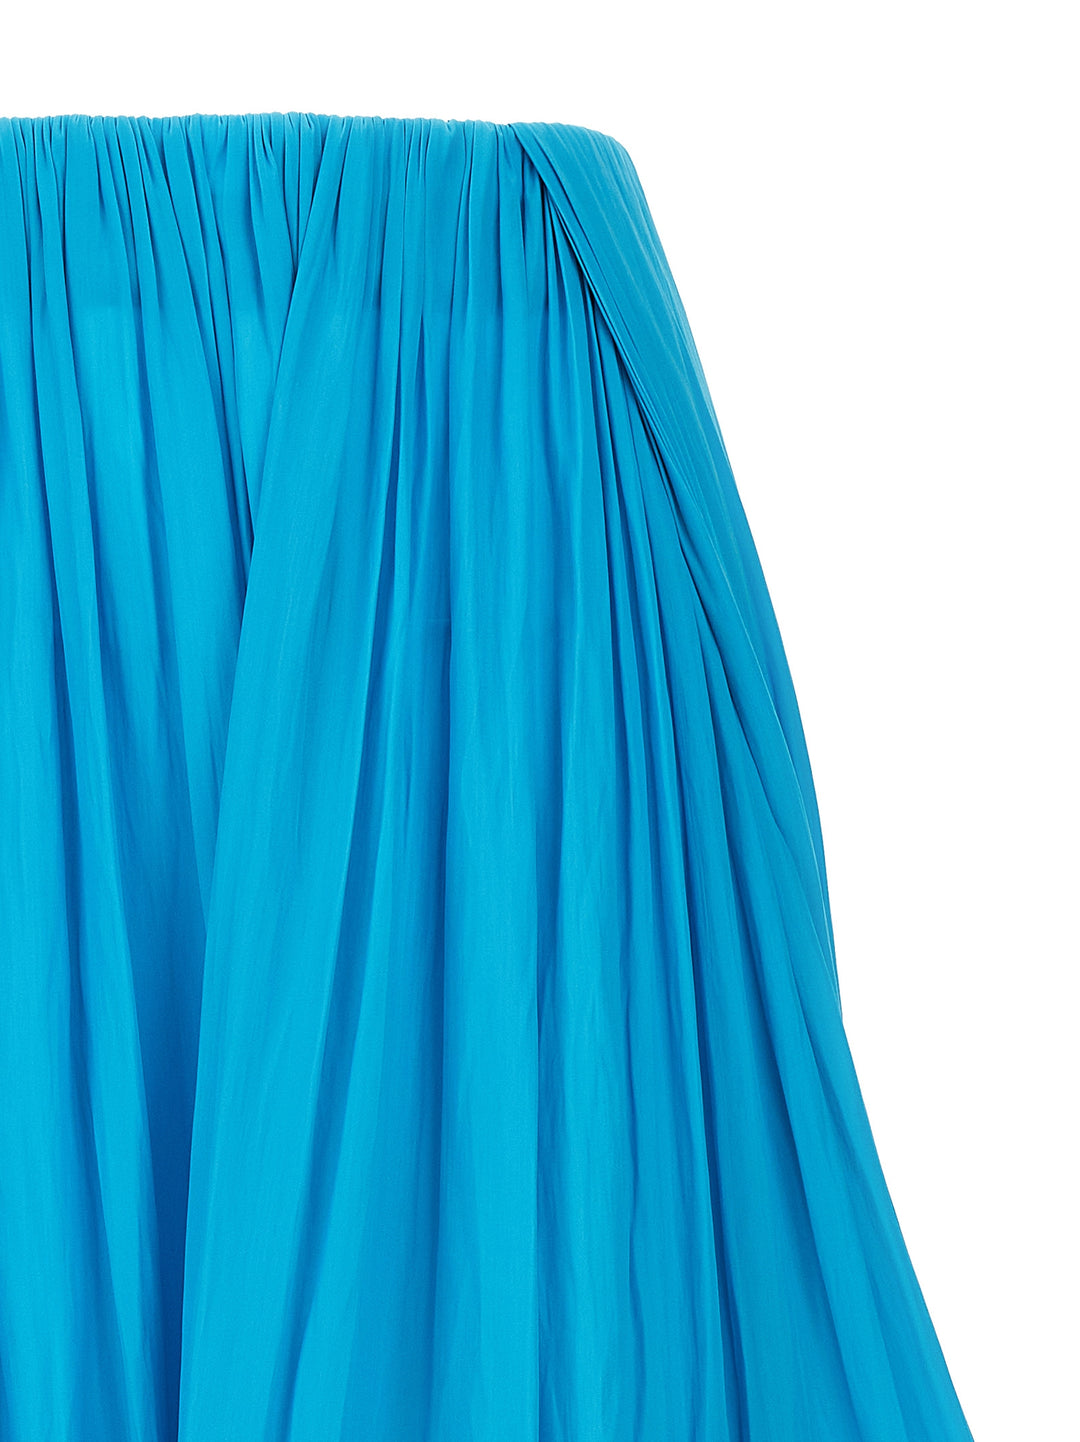 Asymmetrical Midi Skirt Gonne Celeste